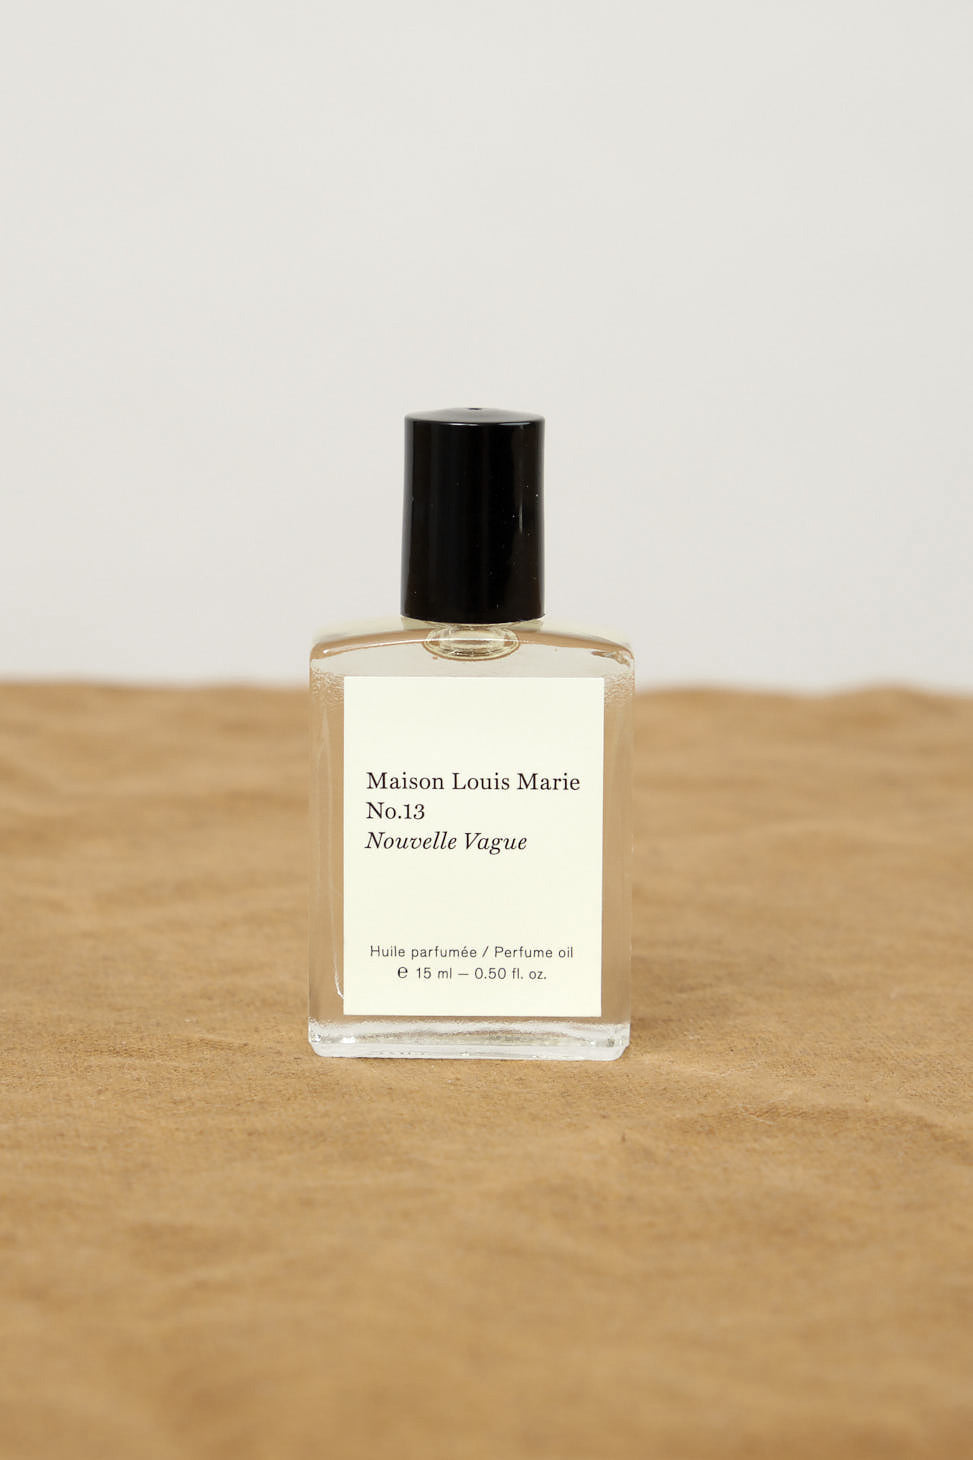 Maison Louis Marie LA THEMIS No. 11 Perfume Oil